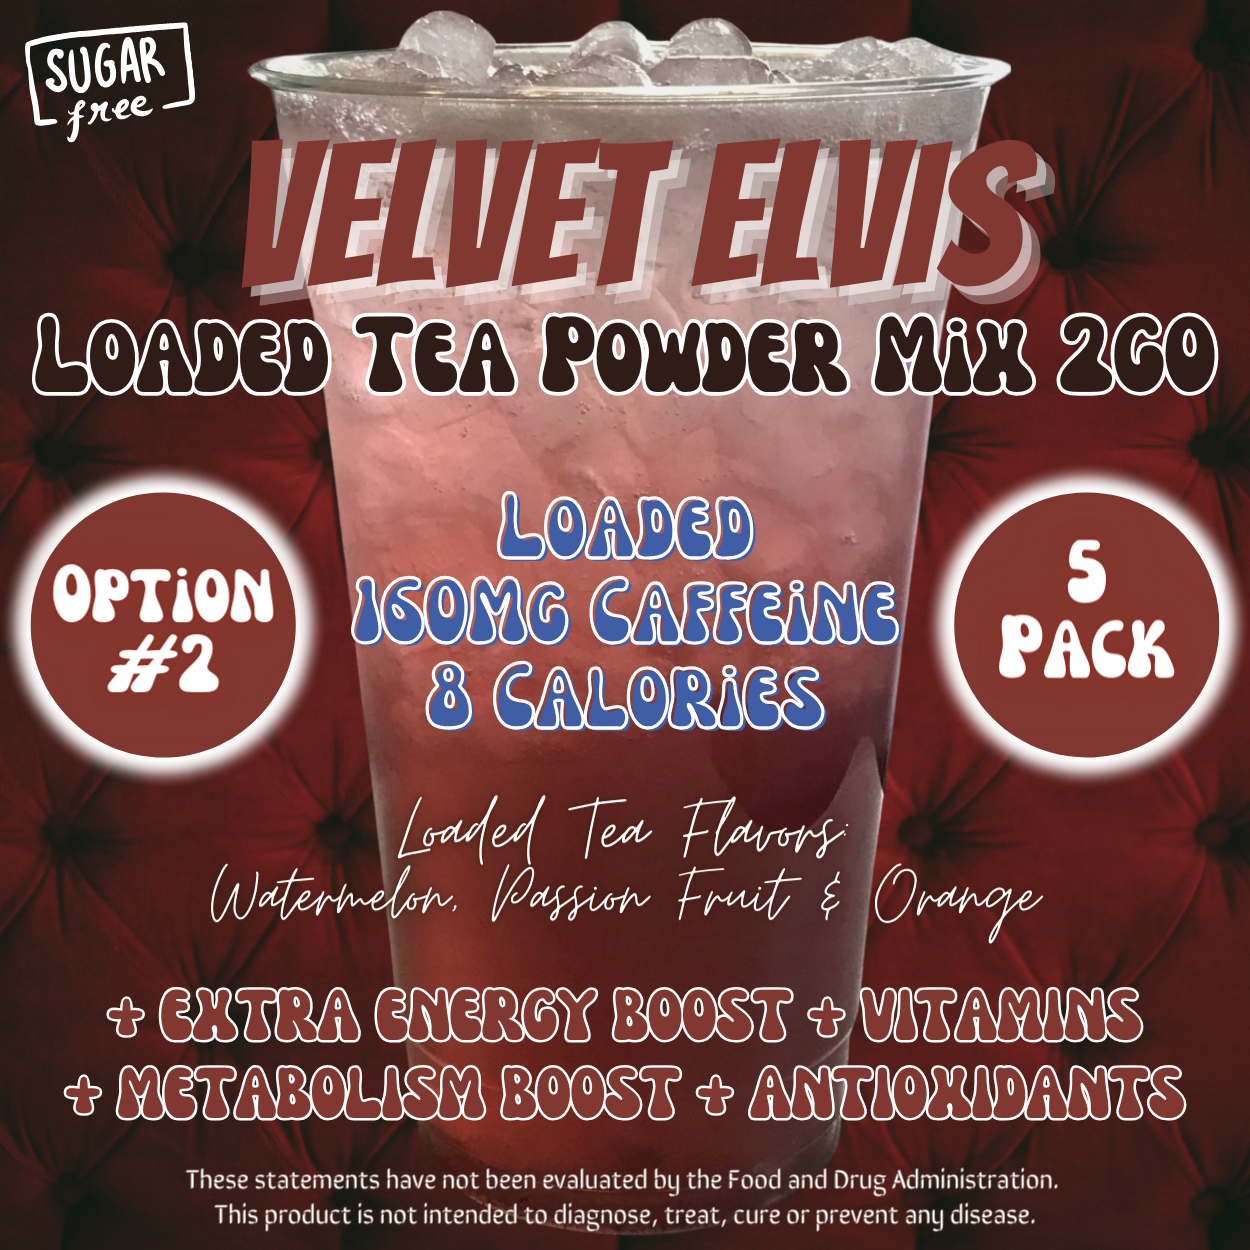 Velvet Elvis: Loaded Tea Powder Mix 2GO Packets